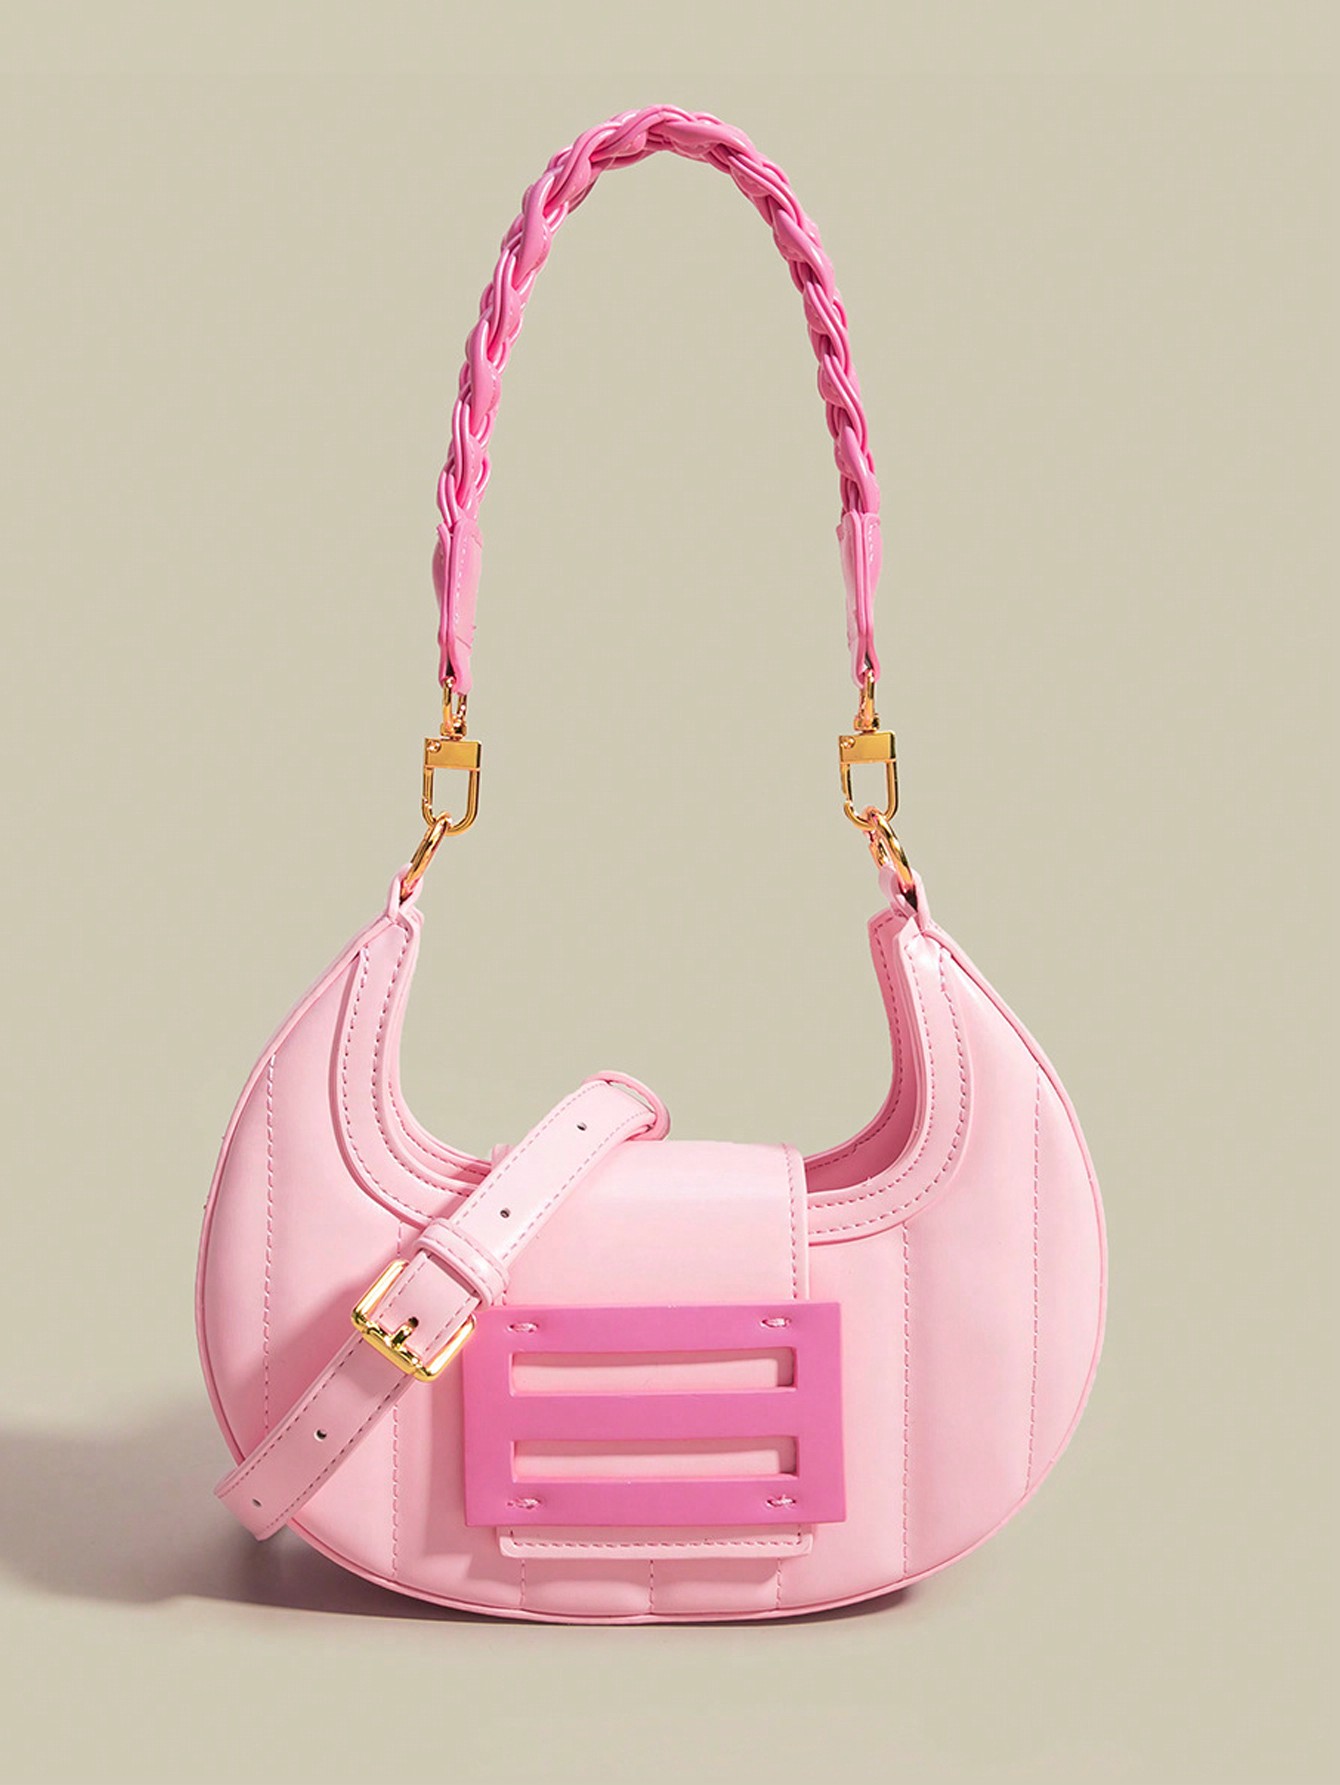 Модная веганская сумка-хобо с розовым полумесяцем, розовый новая сумка через плечо женская сумка нишевая губчатая сумка margiela многофункциональная наплечная сумка на плечо с полумесяцем